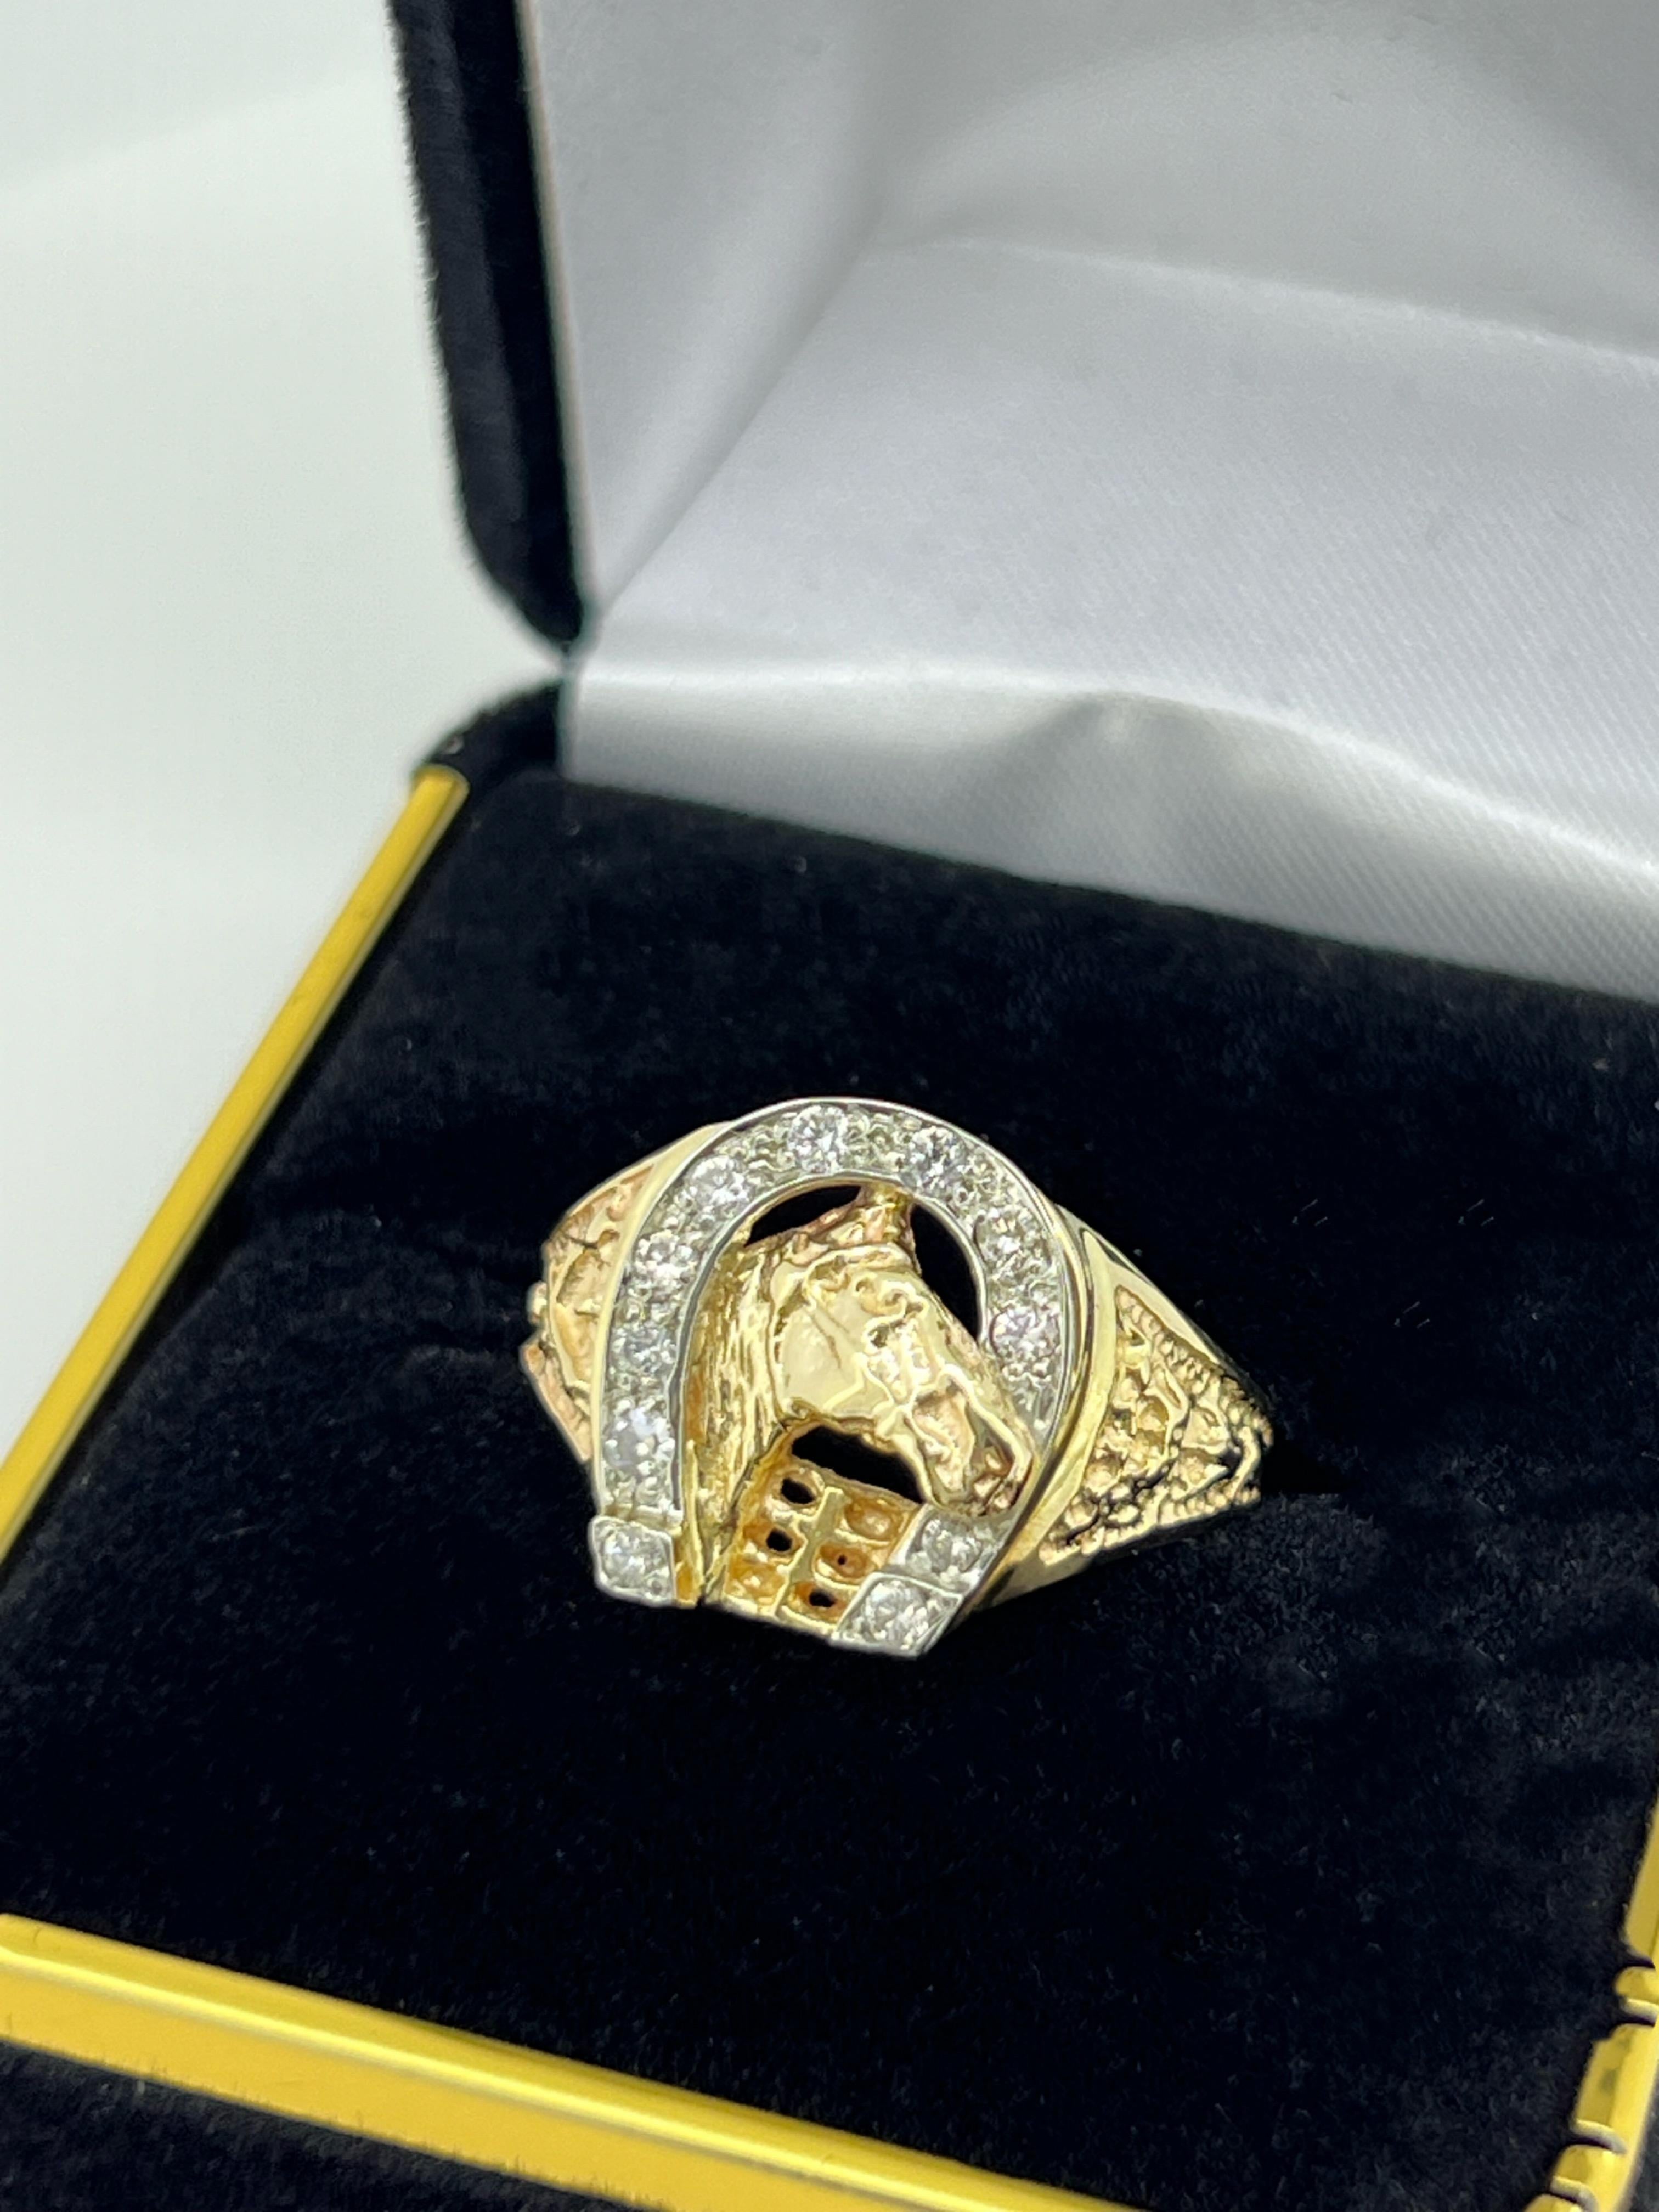 Mit einem exquisiten Design, 
die angeblich Glück bringen soll 
Dieser Unisex-Ring ist mit einem Hufeisenmotiv versehen, 
gefertigt aus 14K Gelbgold 

Das Stück zeigt ein Pferd, unglaublich detailliert,
innerhalb eines Hufeisens, 
verschönert mit